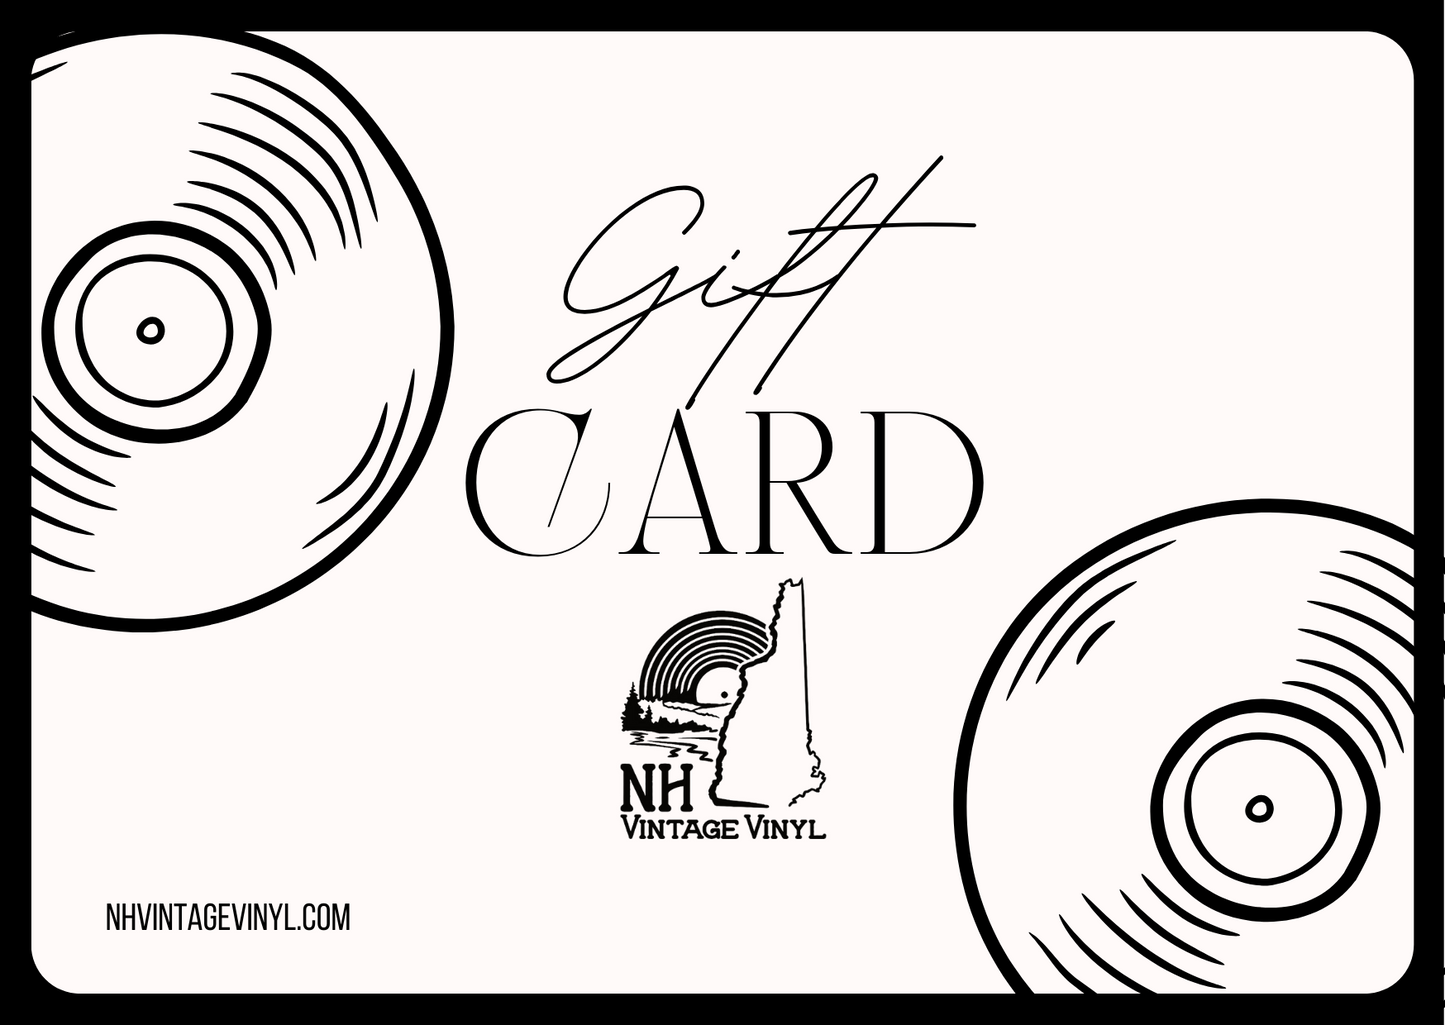 NH Vintage Vinyl Digital Gift Card